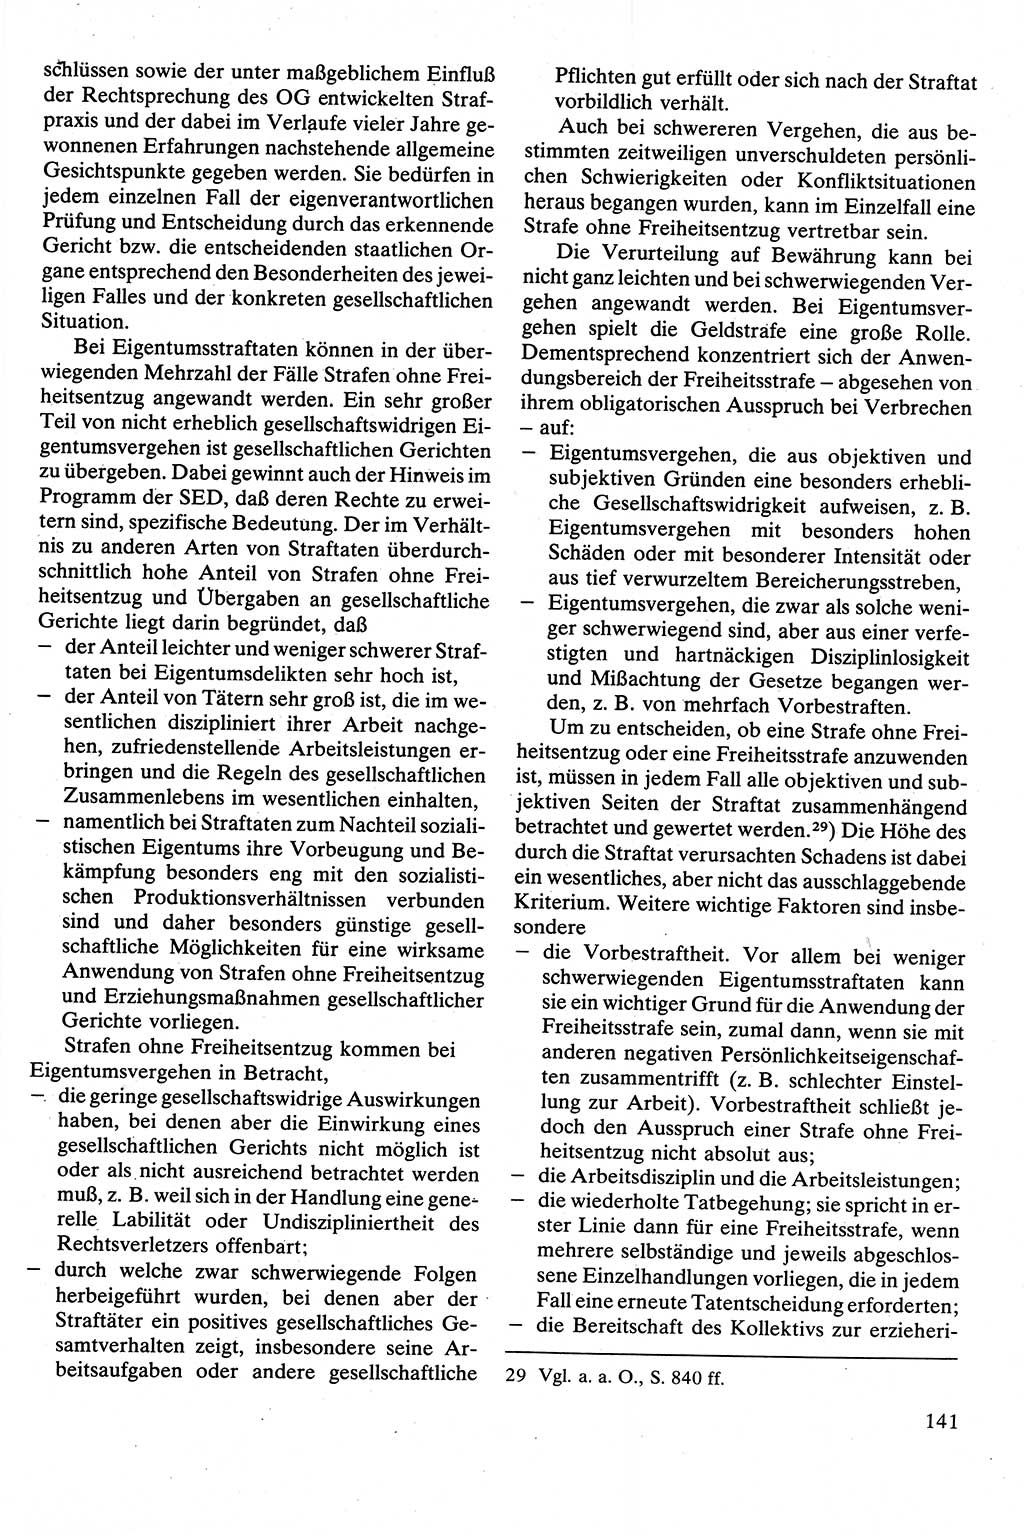 Strafrecht [Deutsche Demokratische Republik (DDR)], Besonderer Teil, Lehrbuch 1981, Seite 141 (Strafr. DDR BT Lb. 1981, S. 141)